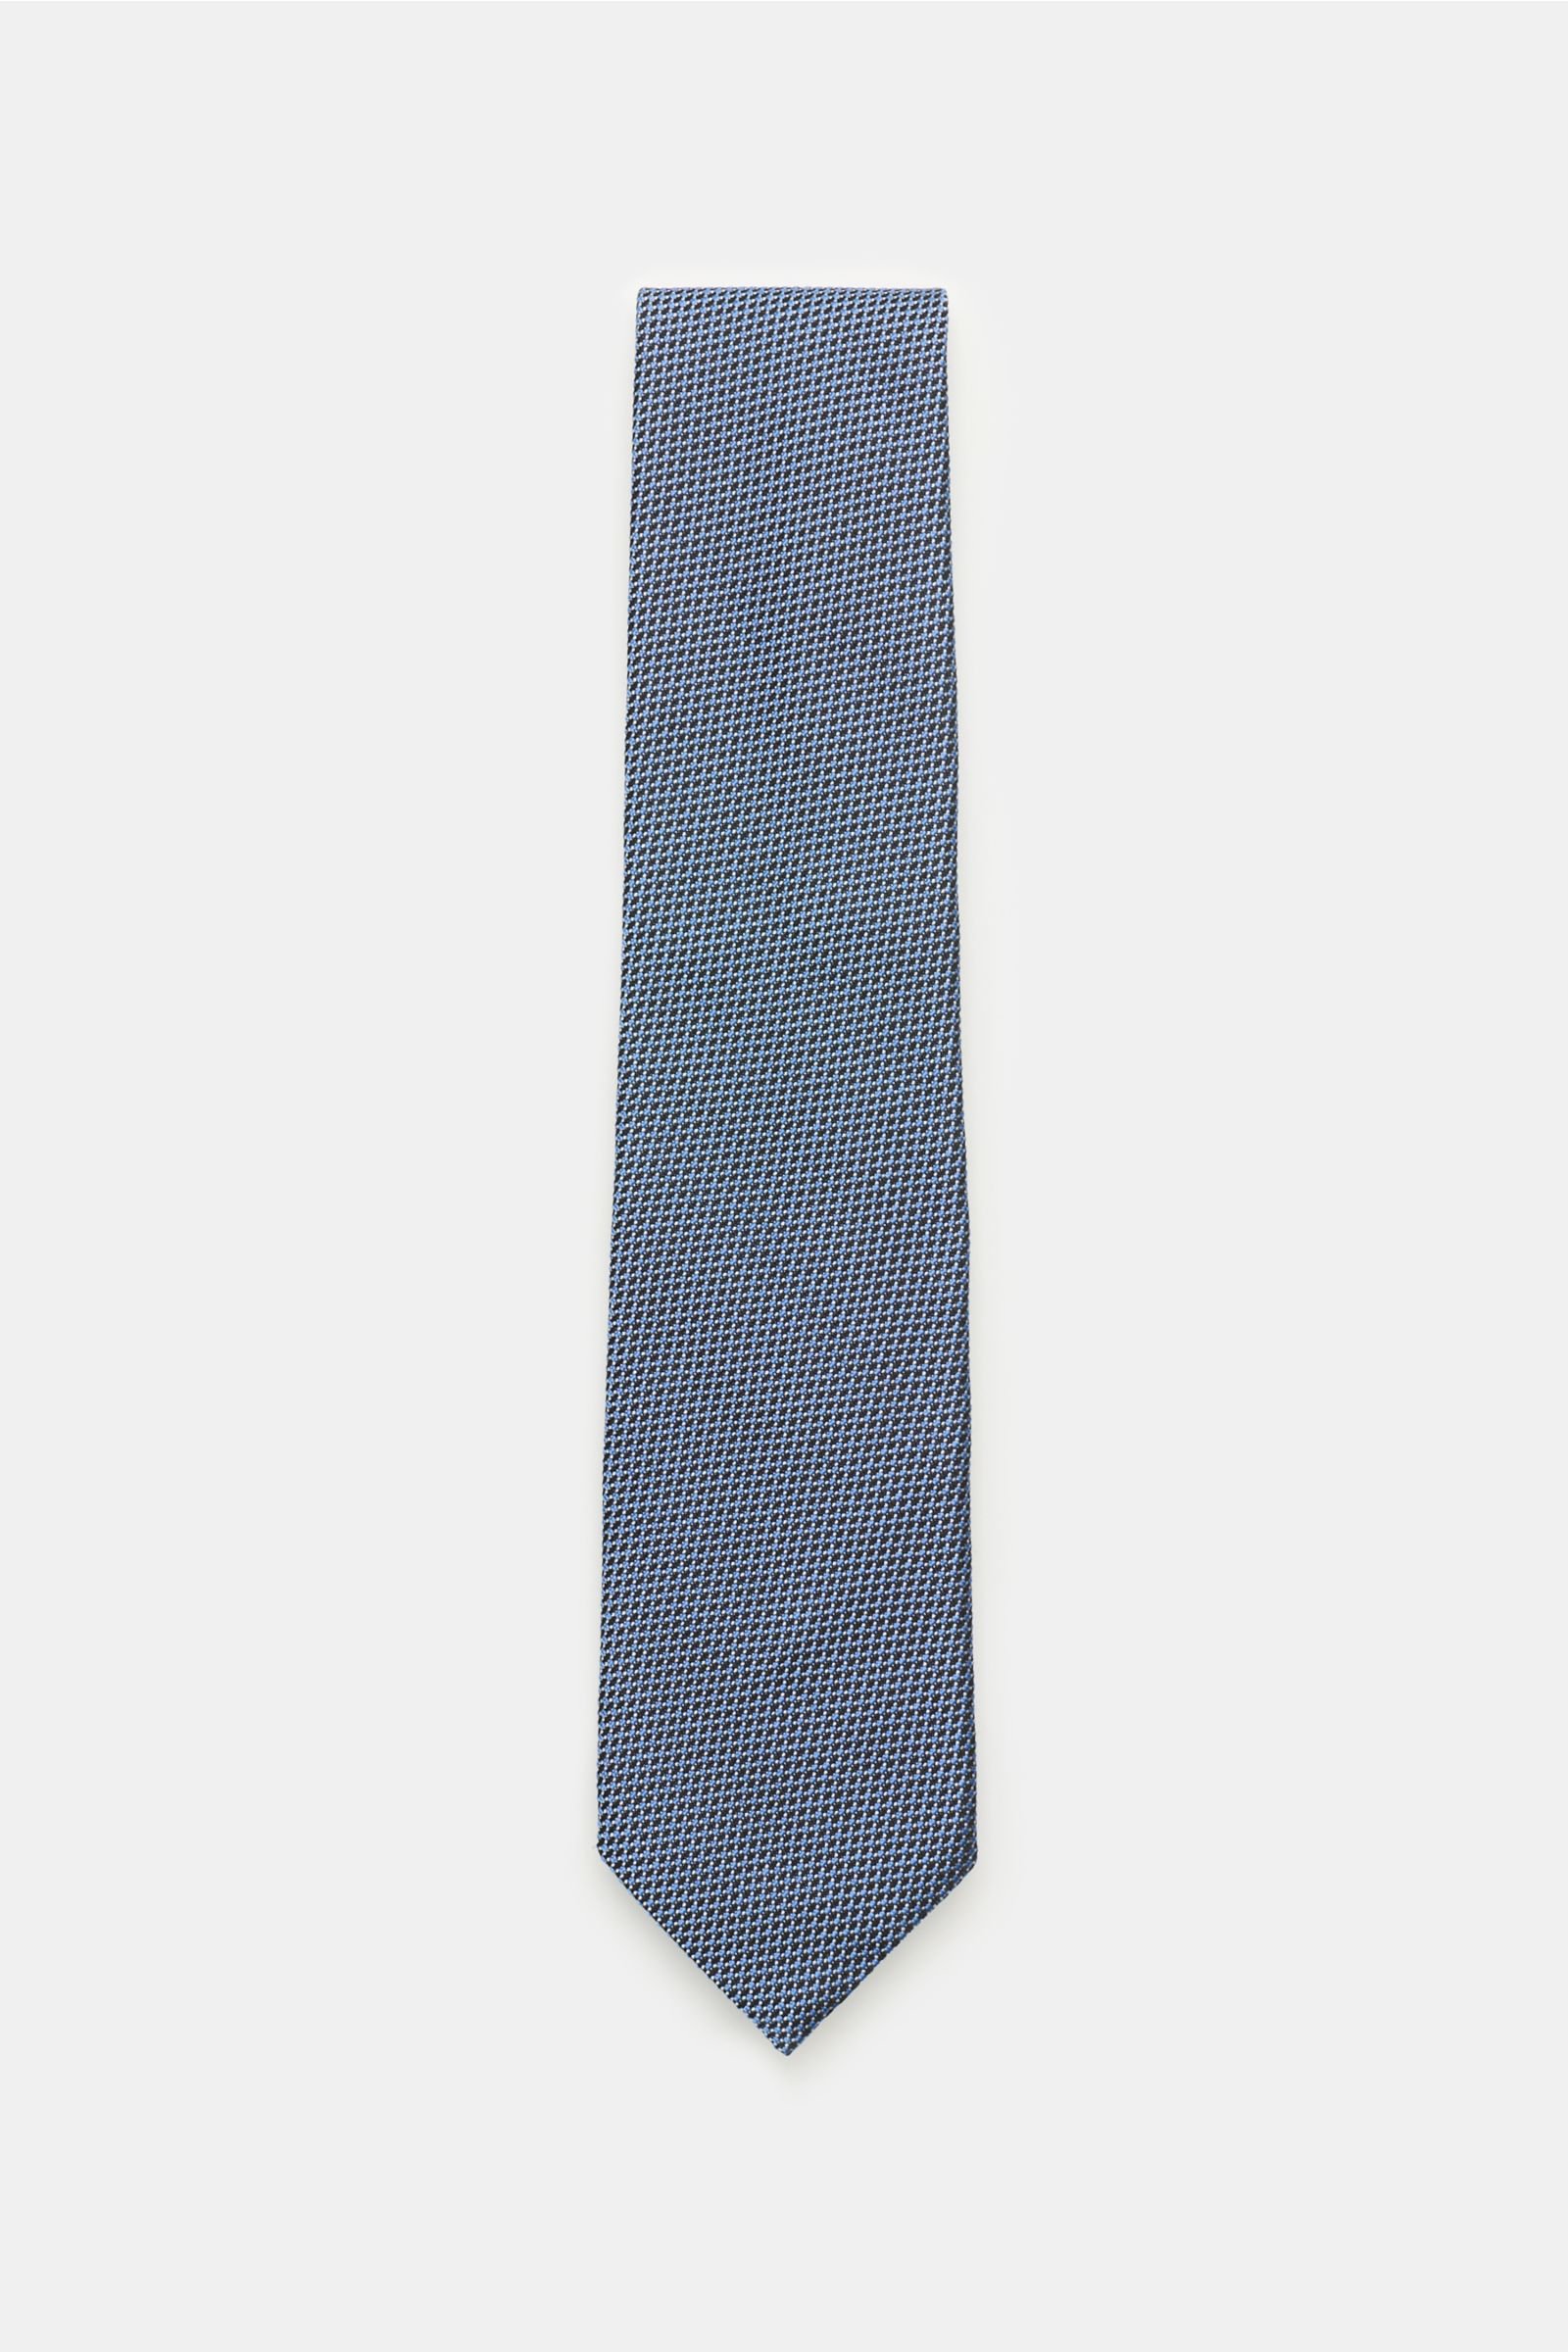 Krawatte rauchblau/navy gemustert